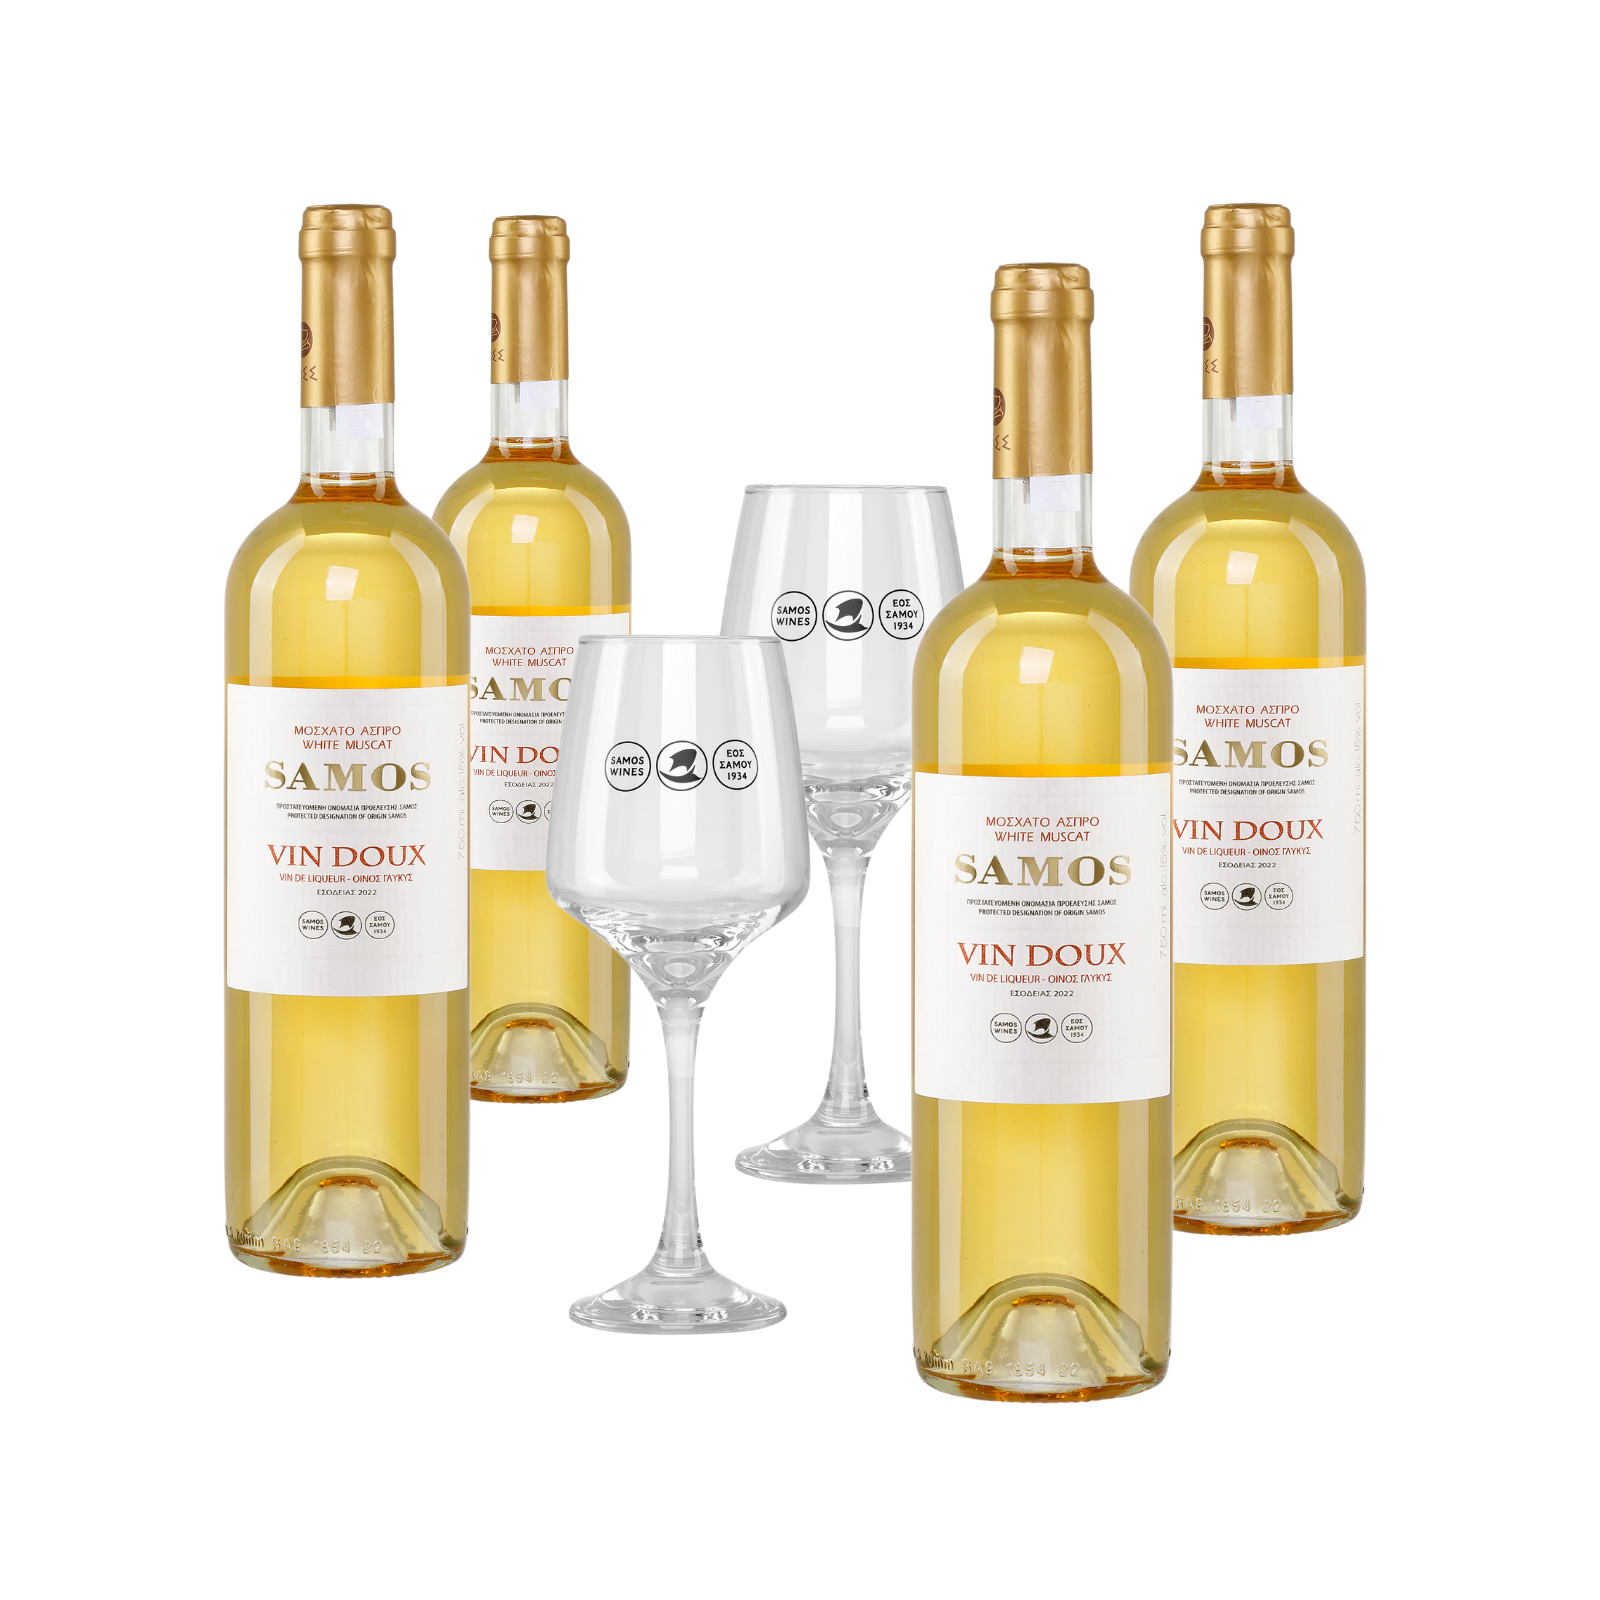 Samos Wein Vin Doux weiß 4x 0,75l + 2 Gläser kaufen, 37,99 €